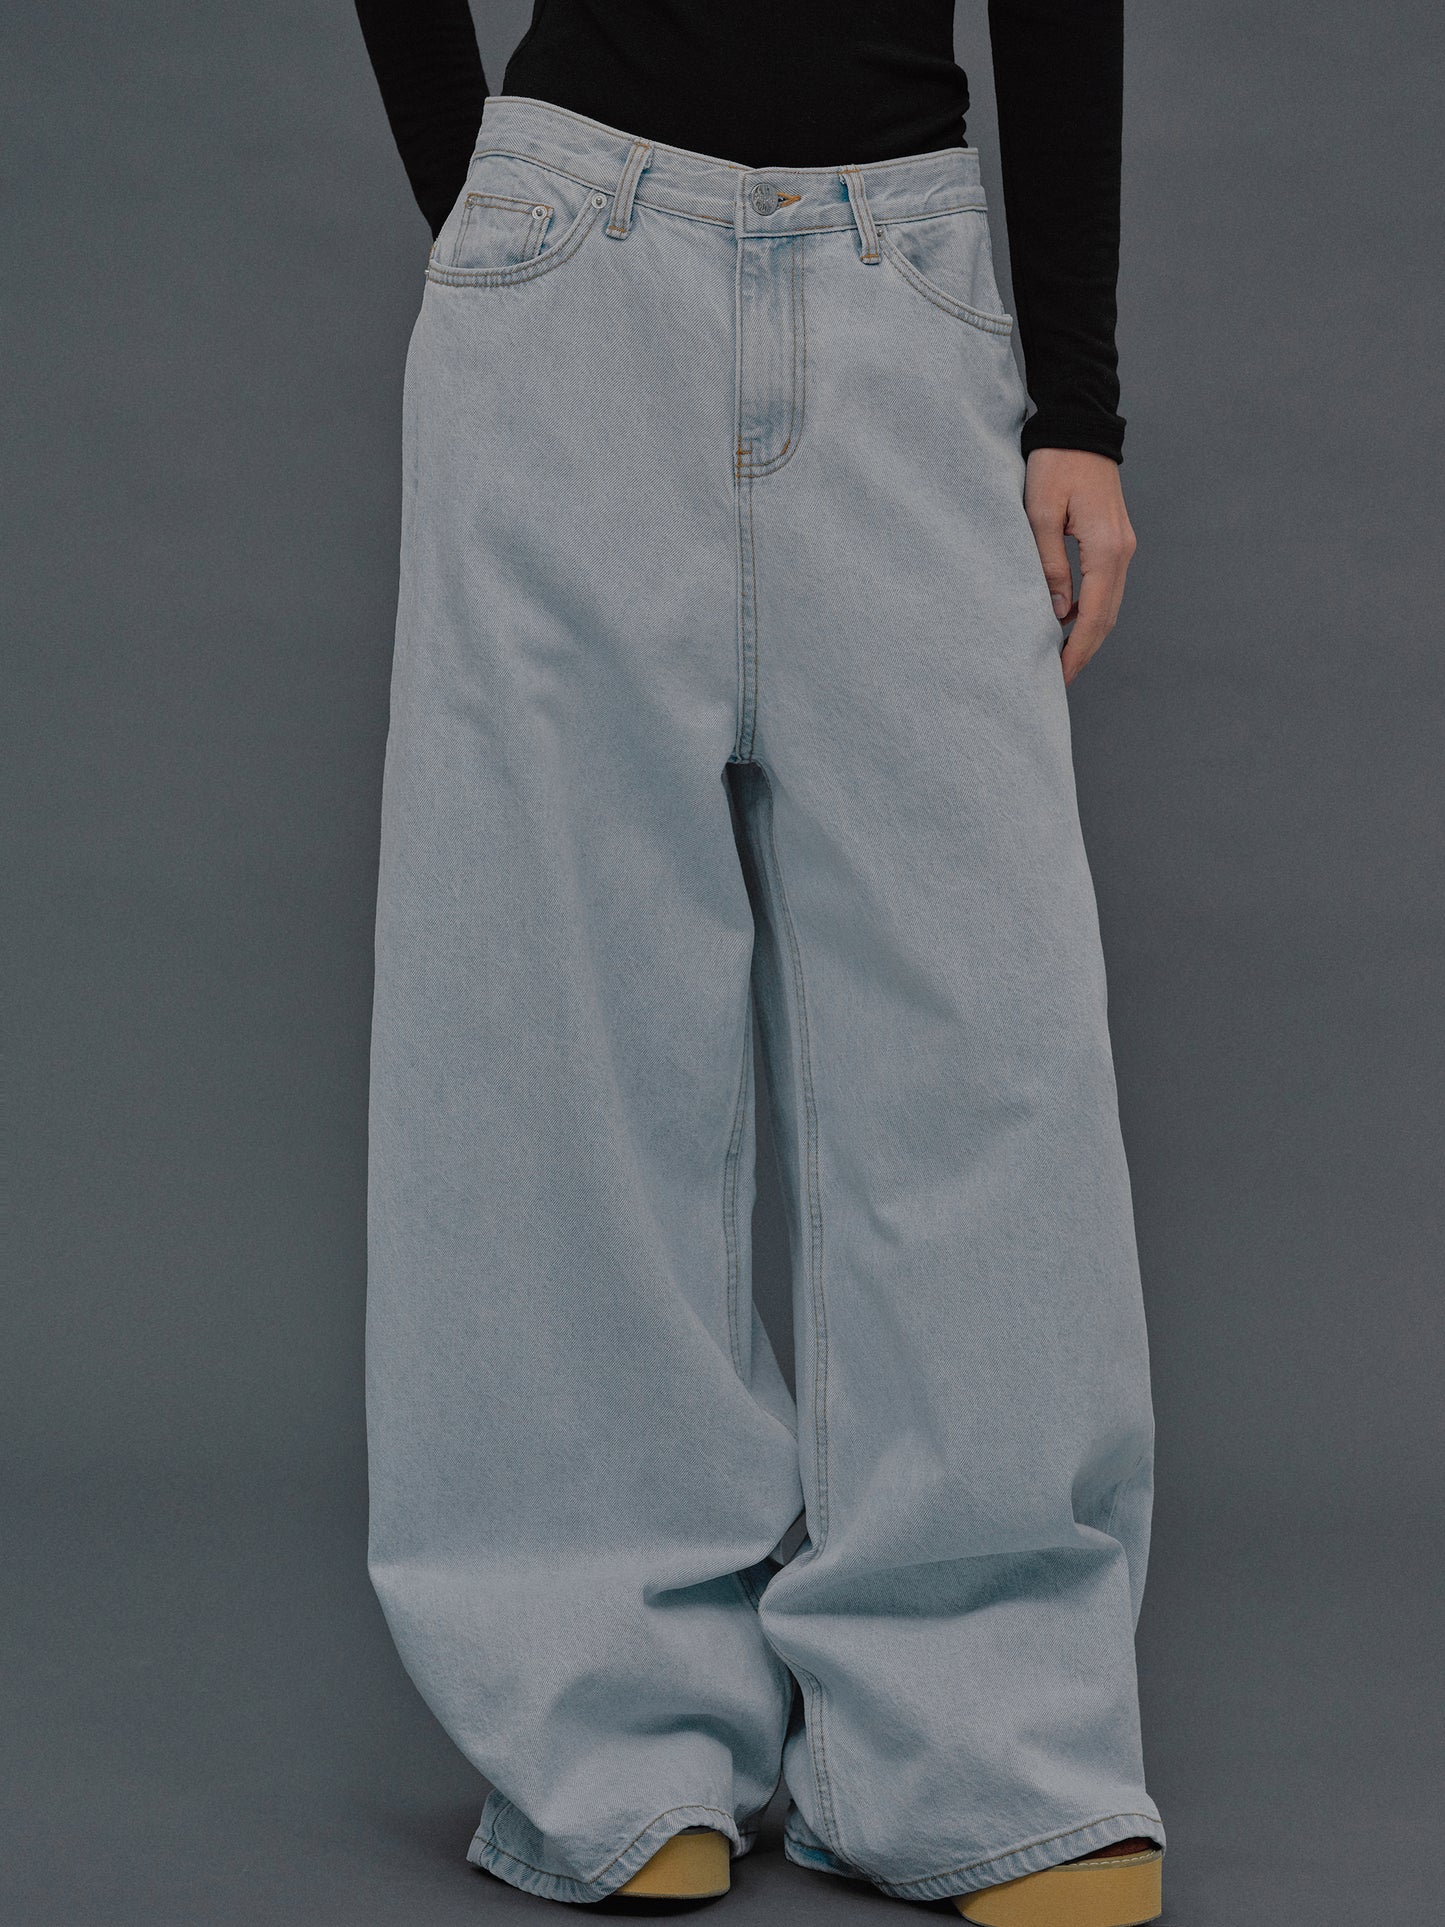 (Pre-order) Oversized Fit Jeans, Light Blue Wash